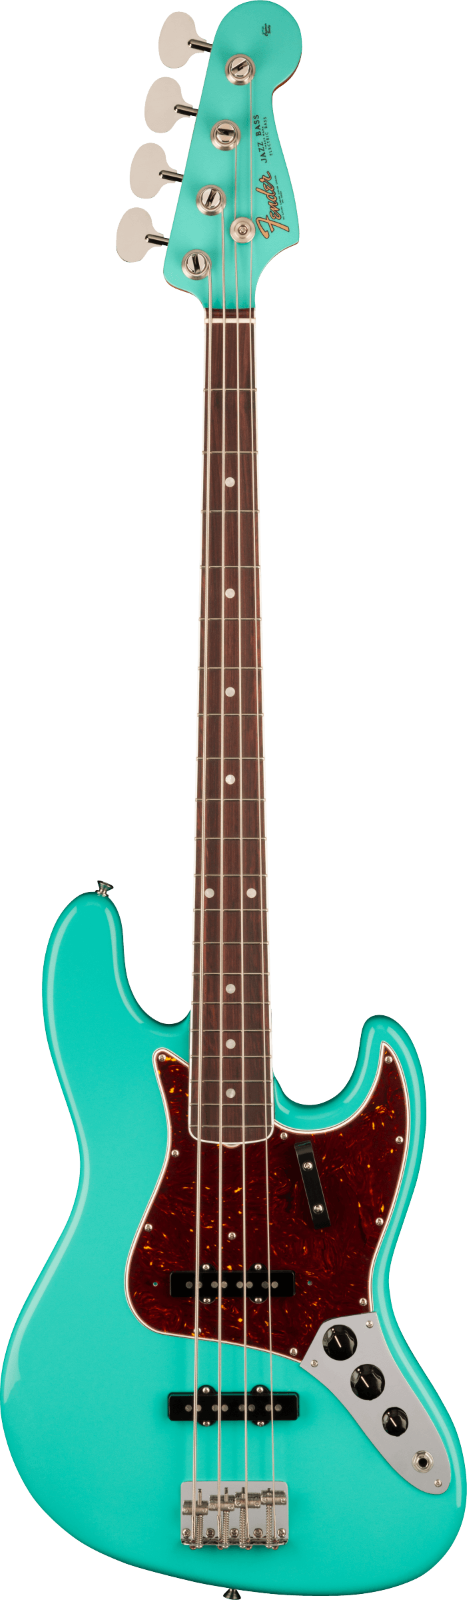 Fender American Vintage II 1966 Jazz Bass, Palisandergriffbrett, Sea Foam Green : photo 1